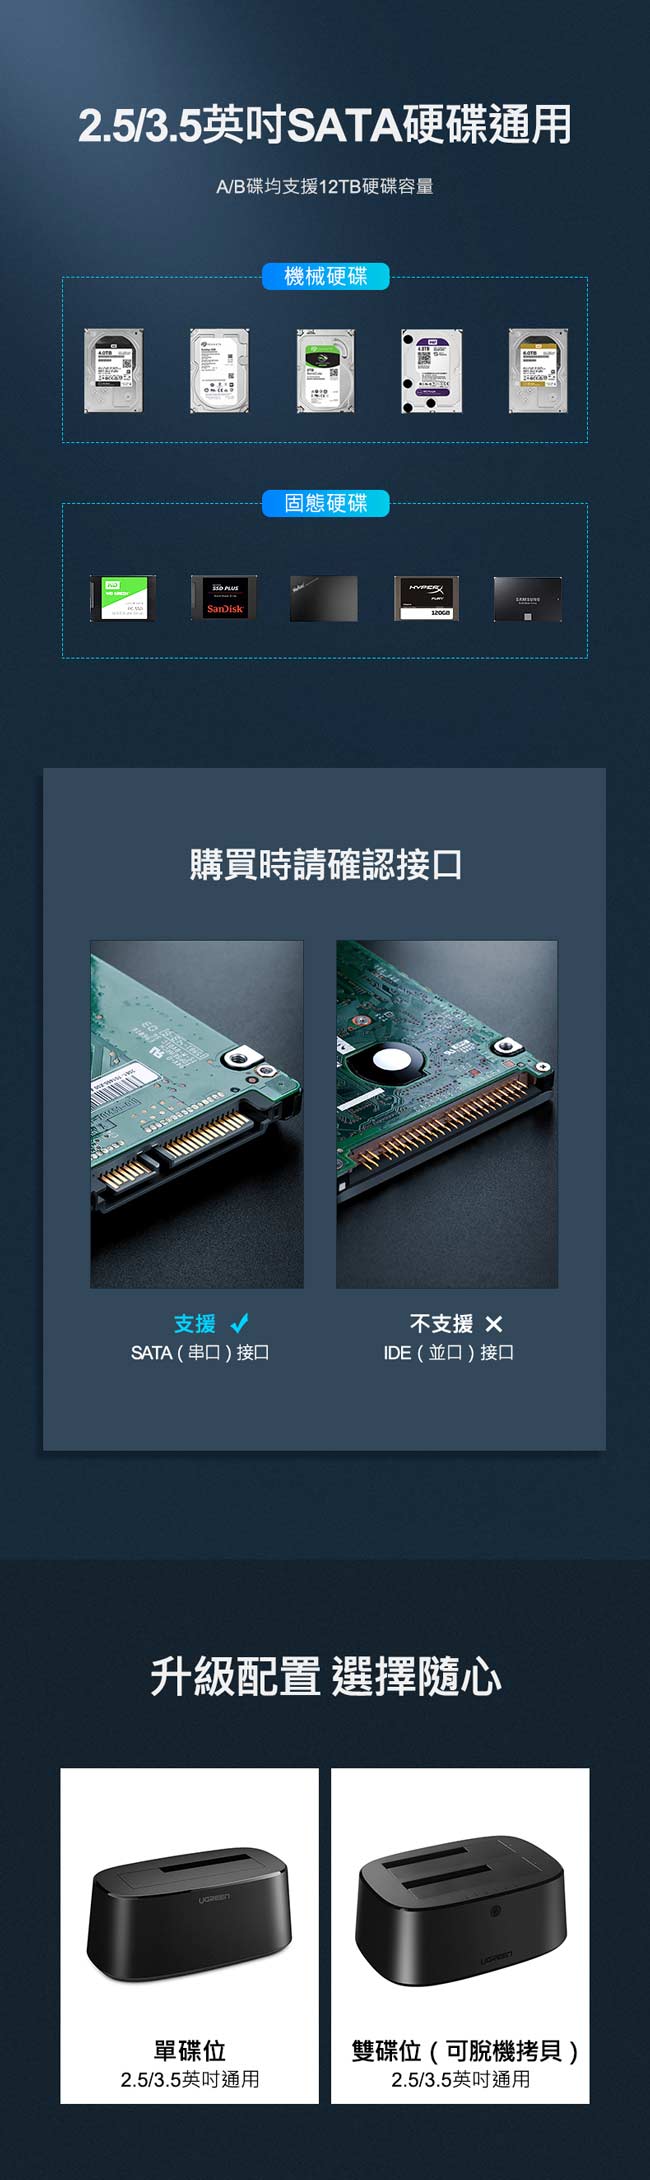 綠聯 2.5/3.5 USB3.0外接硬碟座 UASP雙硬碟版